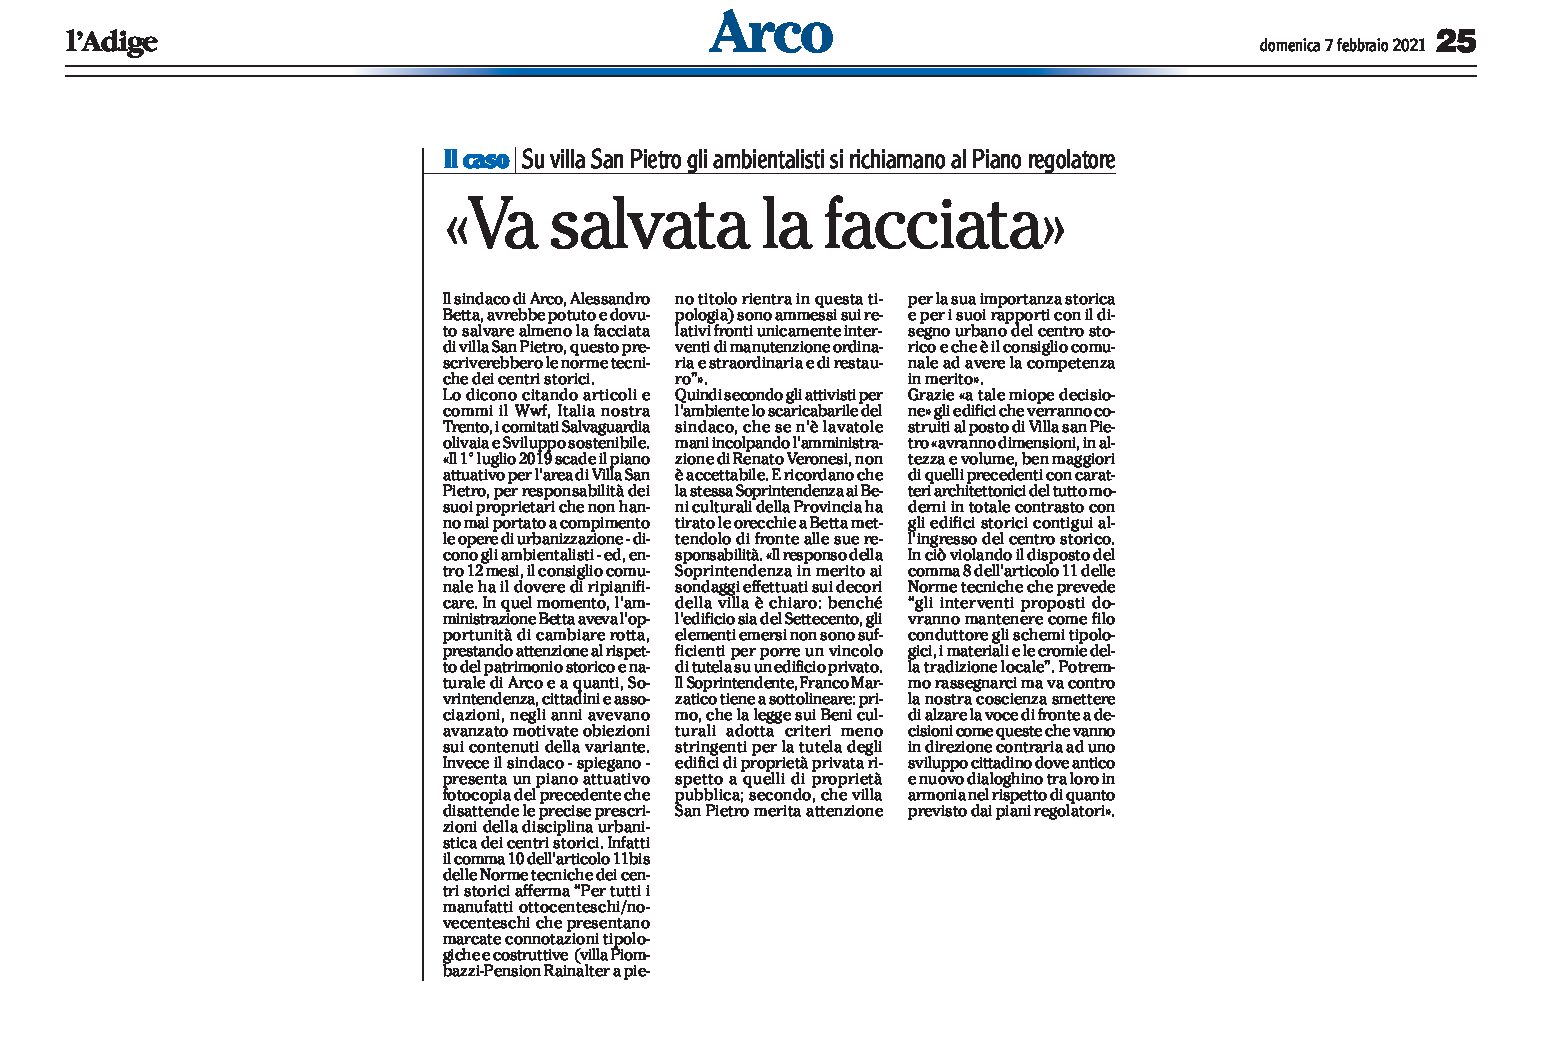 Arco, Villa San Pietro: gli ambientalisti si richiamano al Piano regolatore “va salvata la facciata”